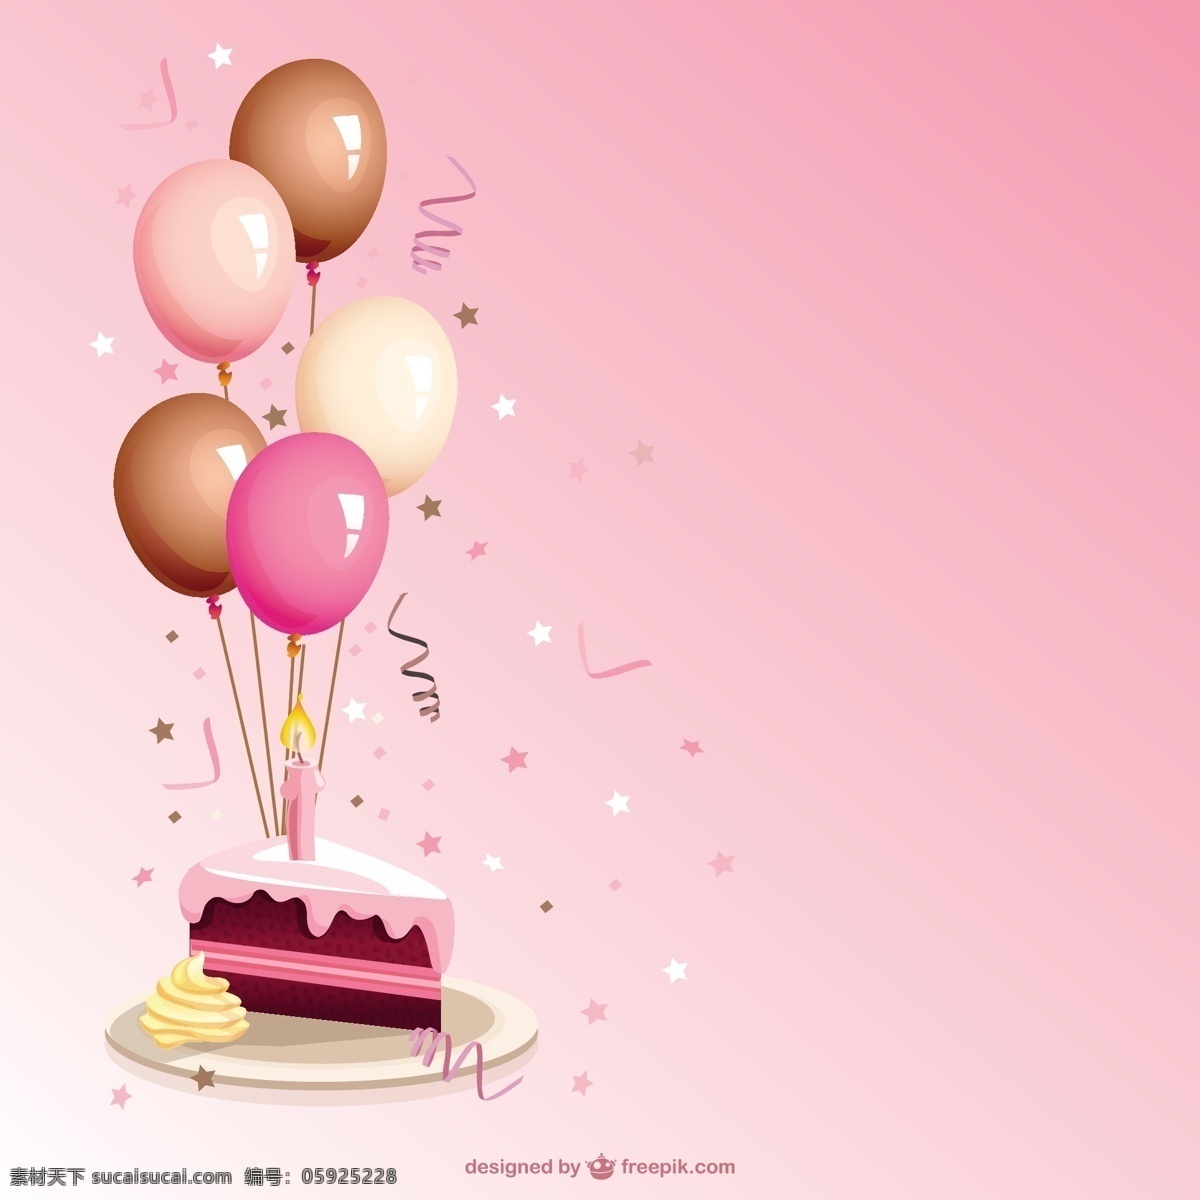 生日蛋糕 卡通 矢量 生日 聚会 卡片 蛋糕 生日卡片 生日聚会 生日卡 生日矢量 粉色